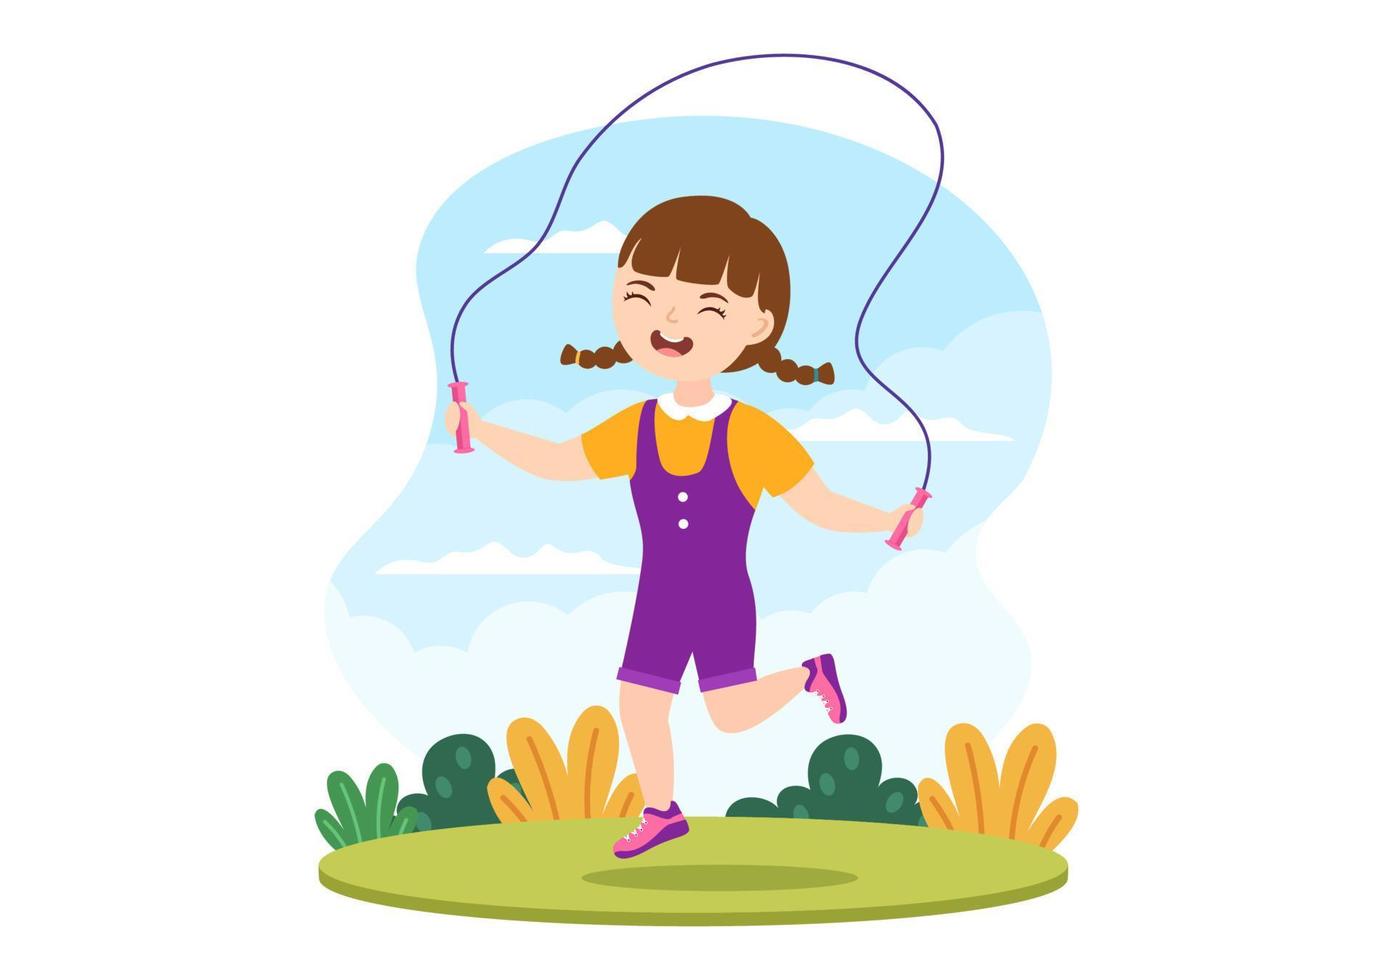 ilustración de saltar la cuerda con niños jugando saltando ropa deportiva en actividades deportivas de fitness en interiores plantillas dibujadas a mano de dibujos animados planos vector